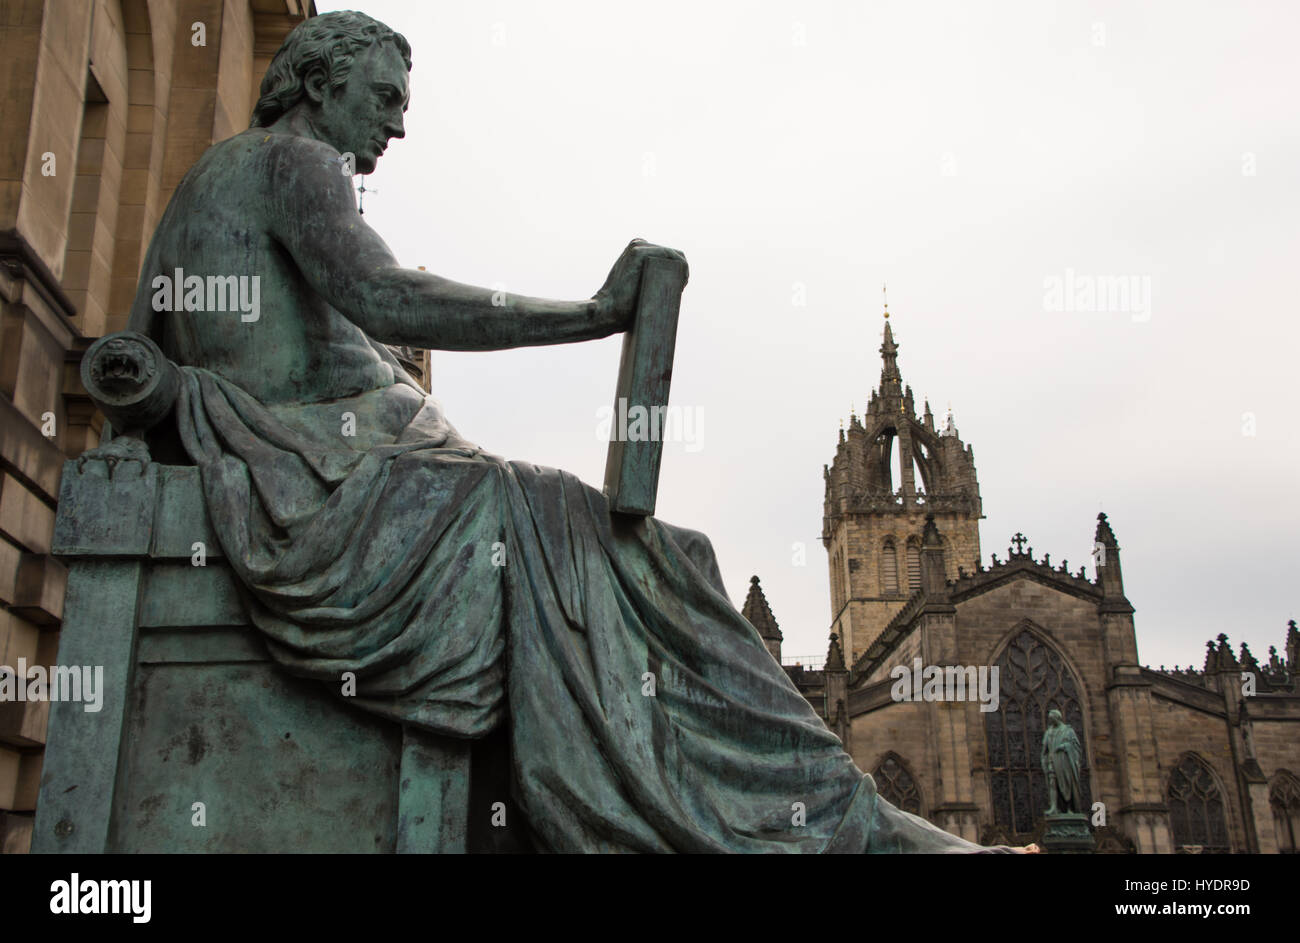 Statue von David Hume mit St Giles' Cathedral in den Hintergrund, Edinburgh, Schottland Stockfoto